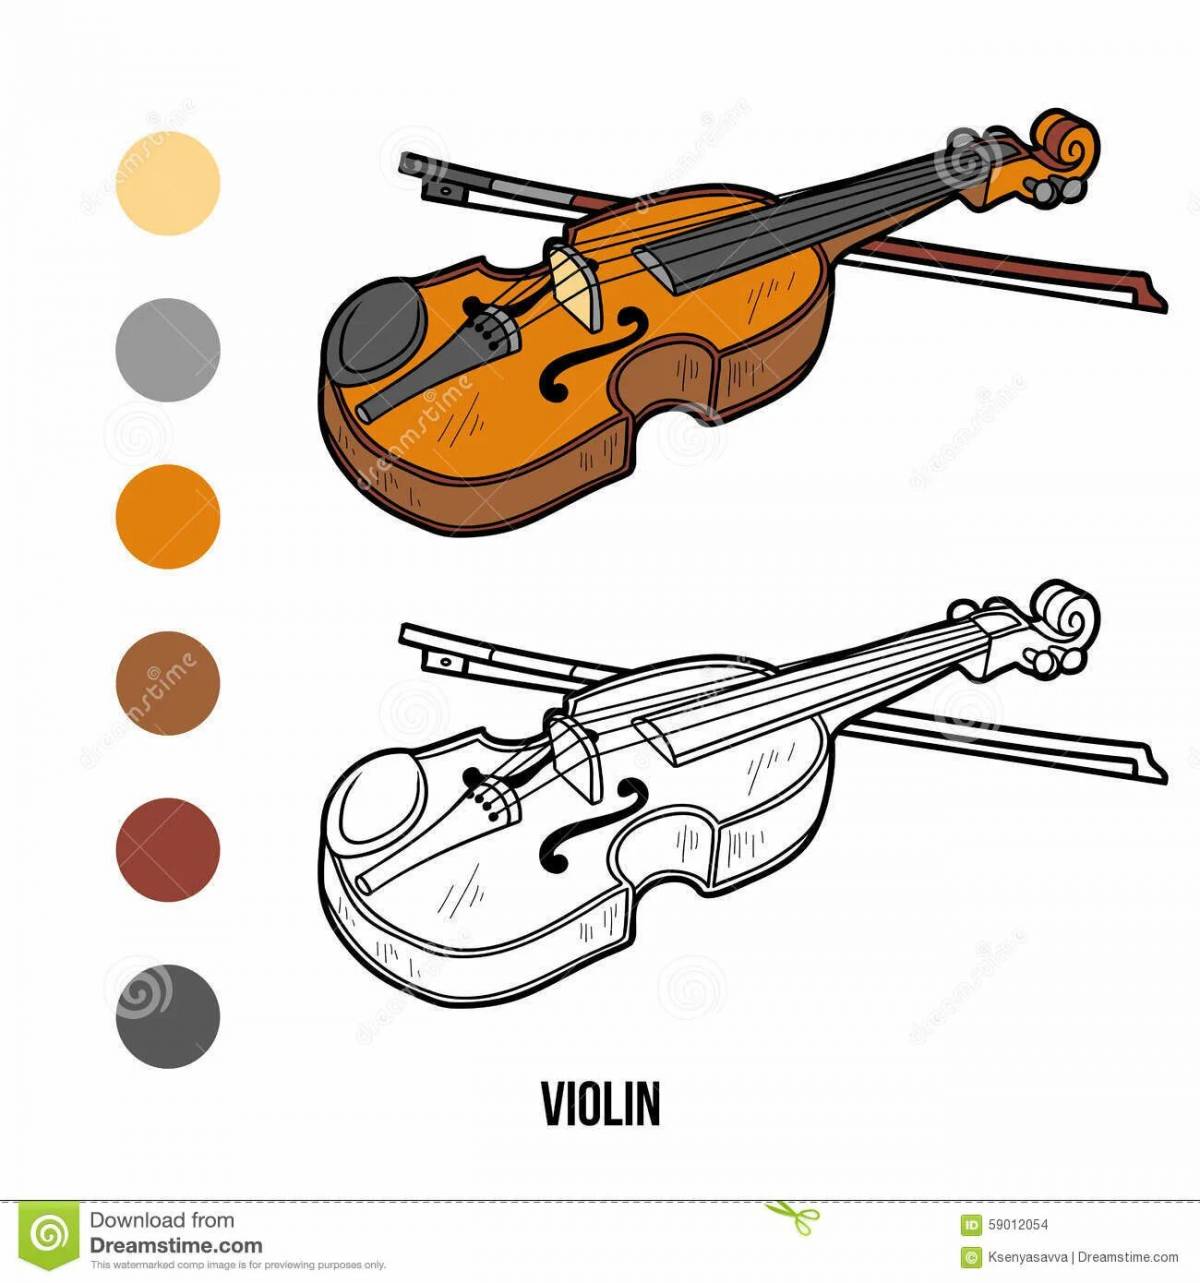 Муз инструменты карточки для детей раскраски скрипка